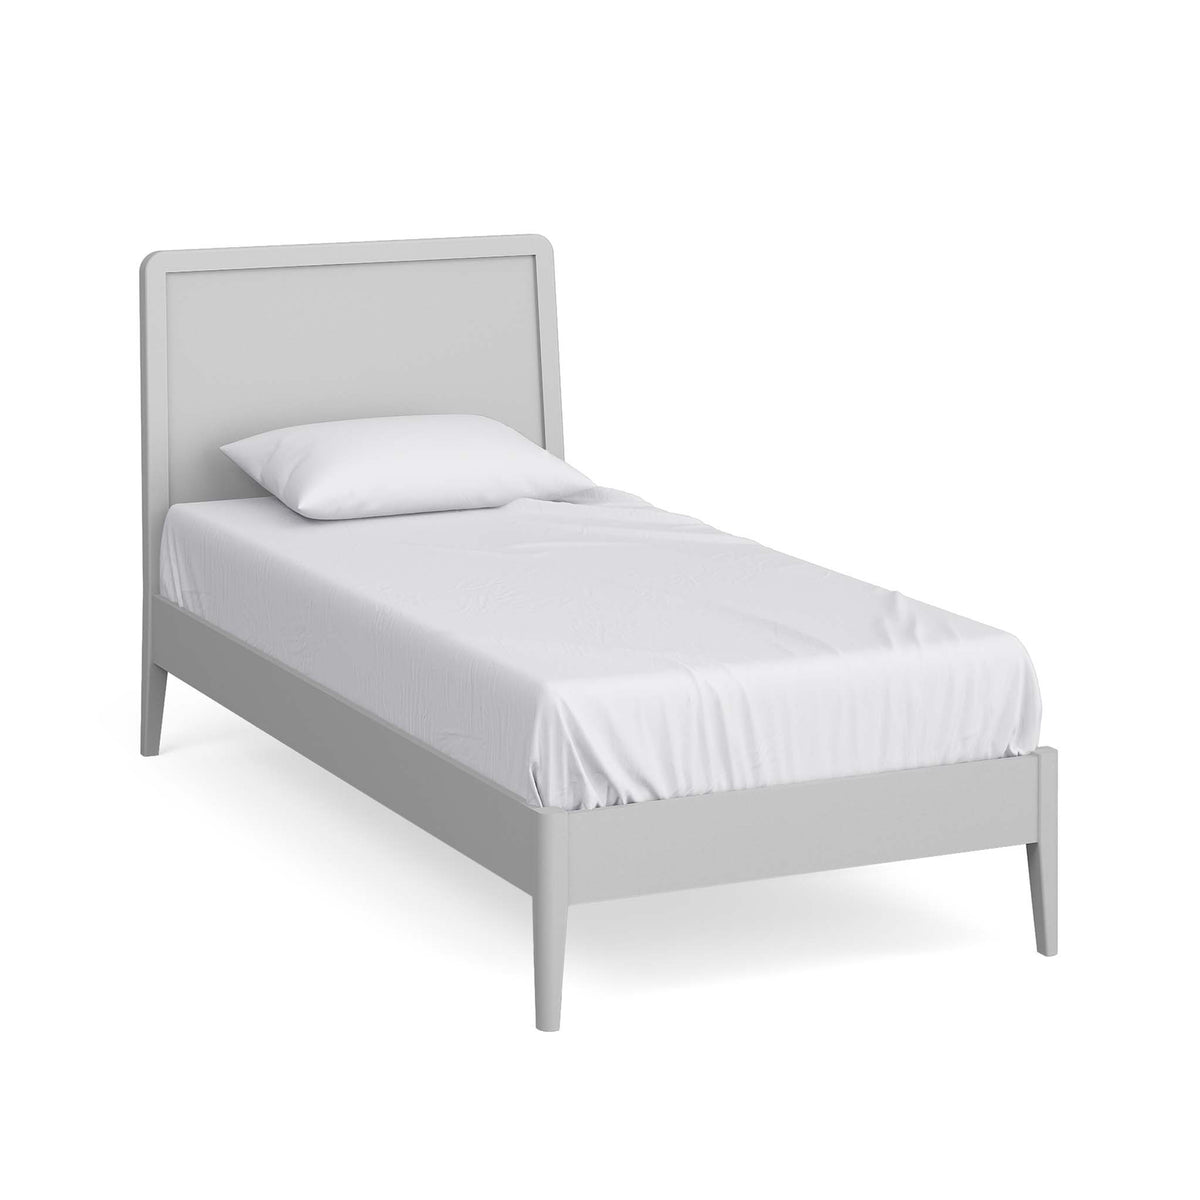 Elgin Grey 3ft Single Bed Frame from Roseland Furniture